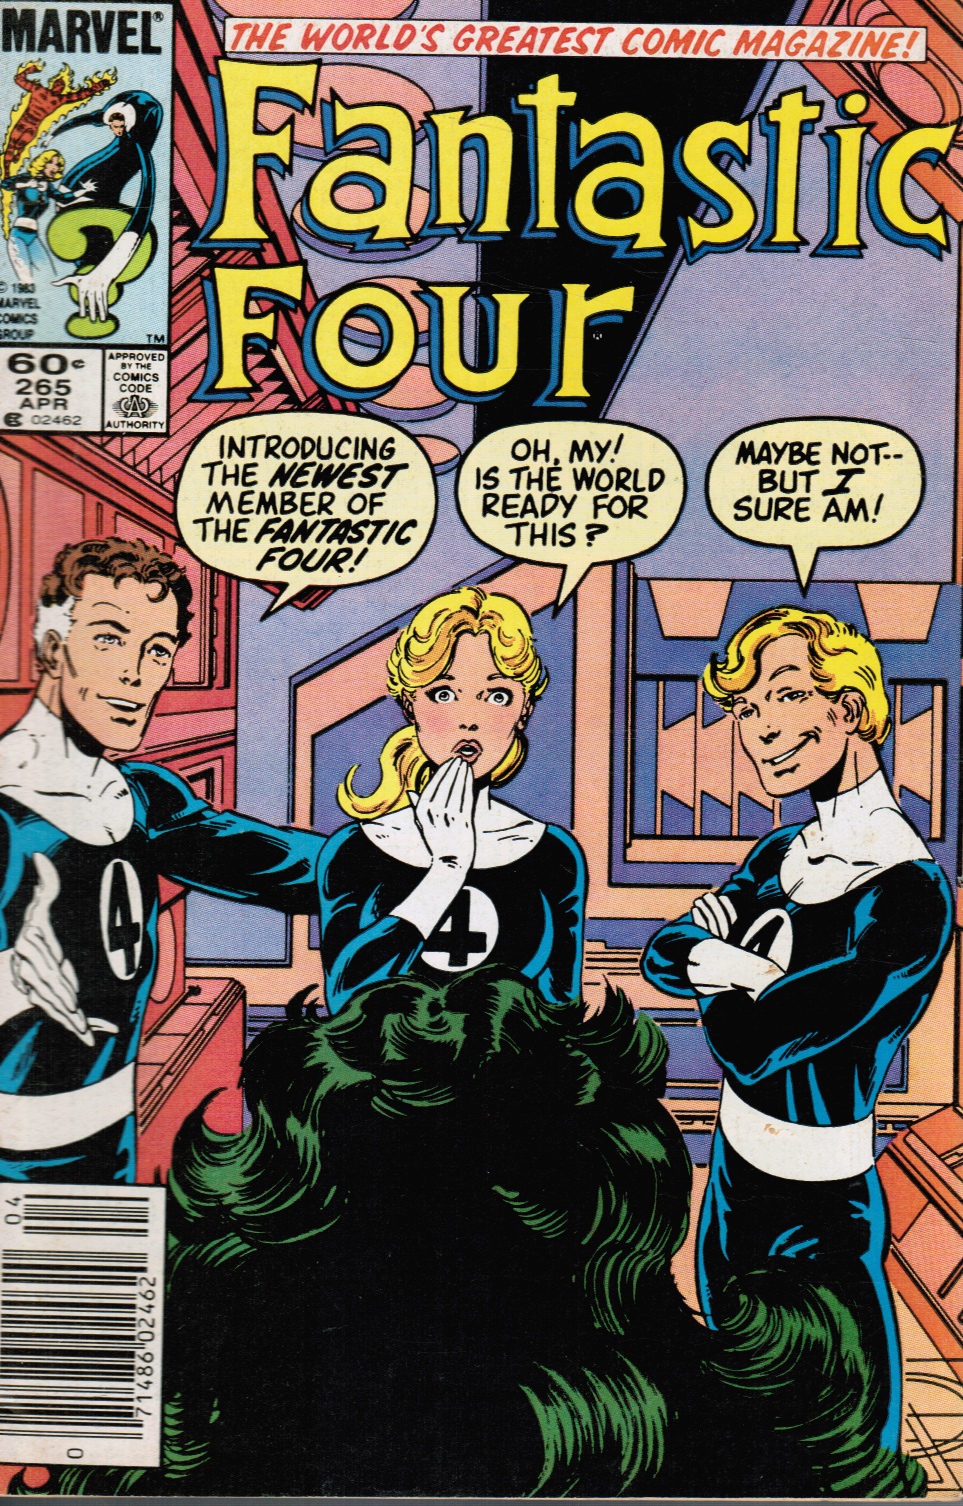 BYRNE, JOHN - Fantastic Four #265